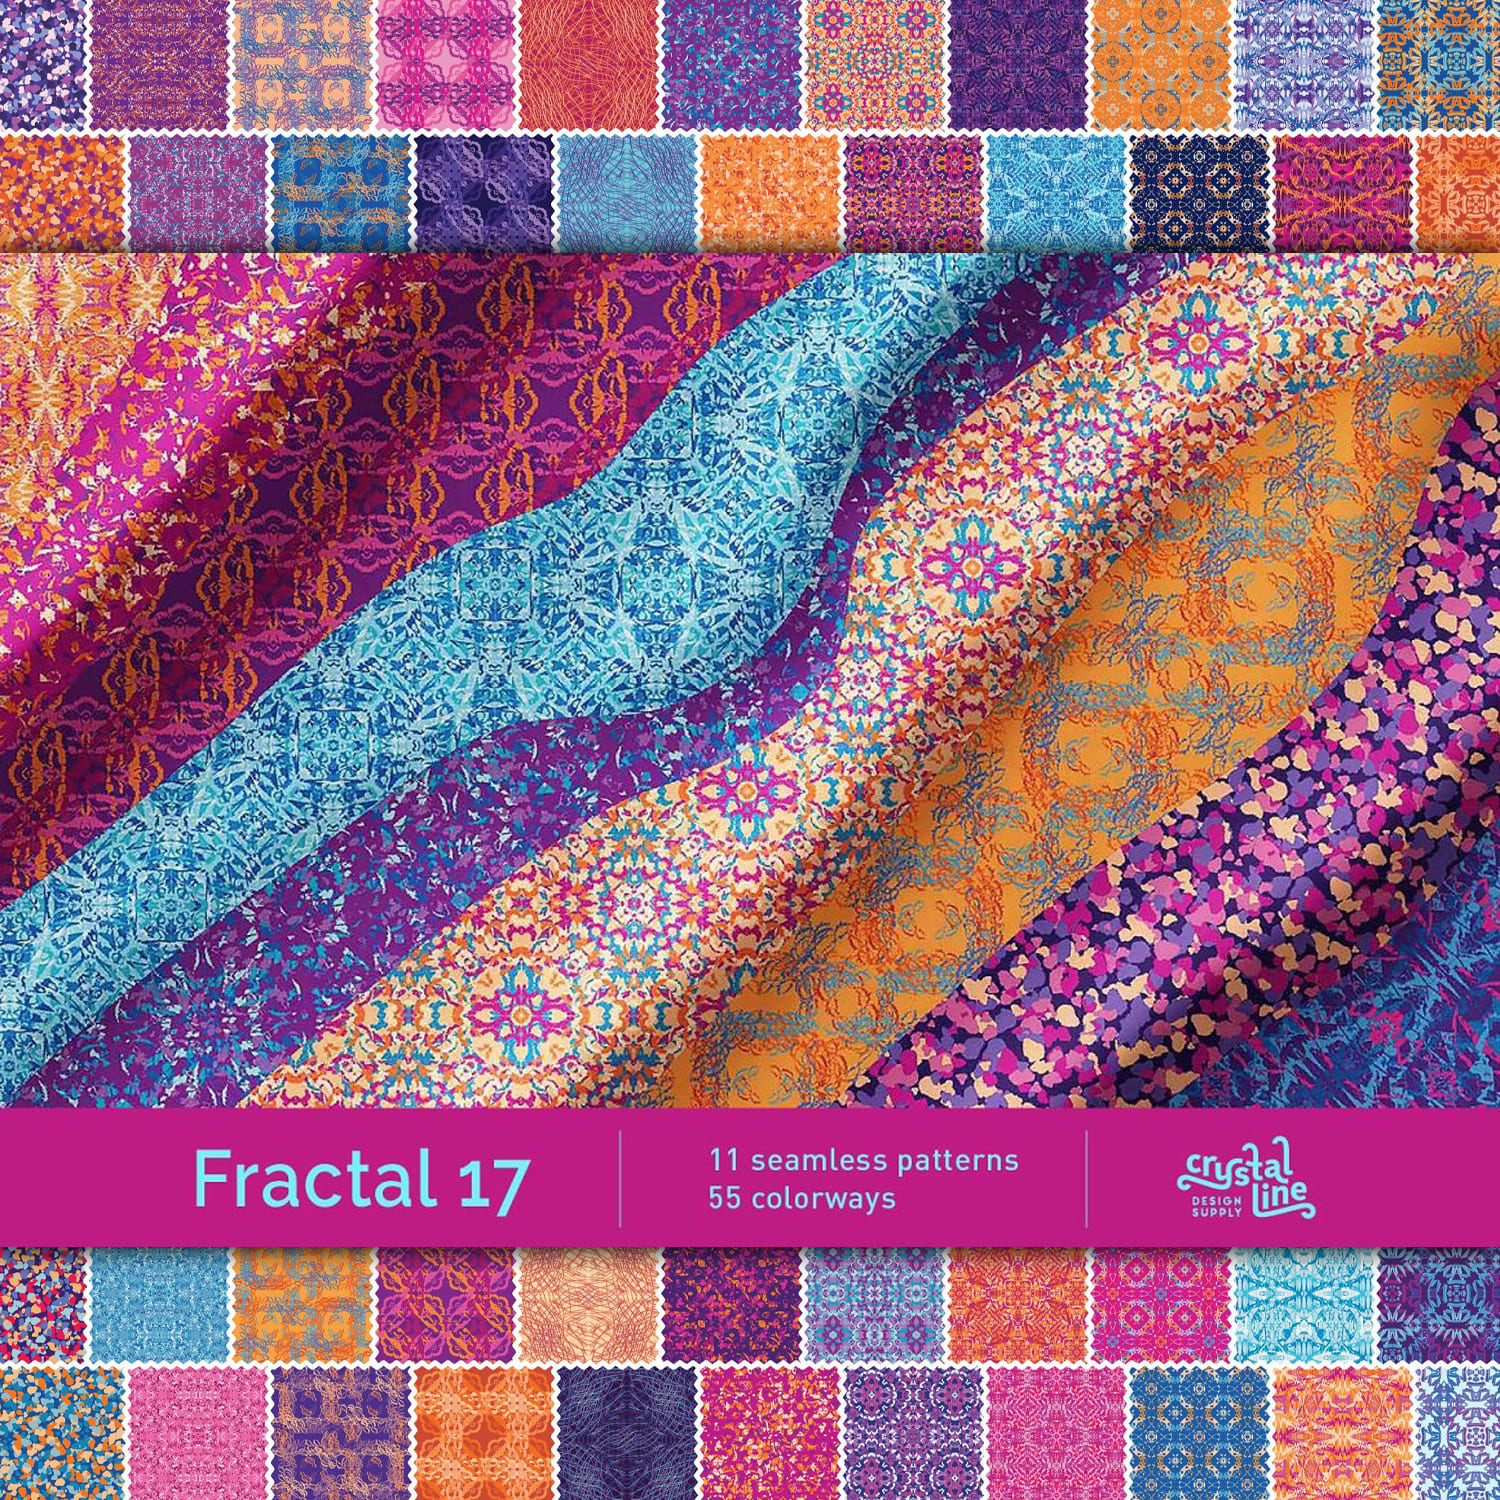 Fractal Patterns 17 cover image.